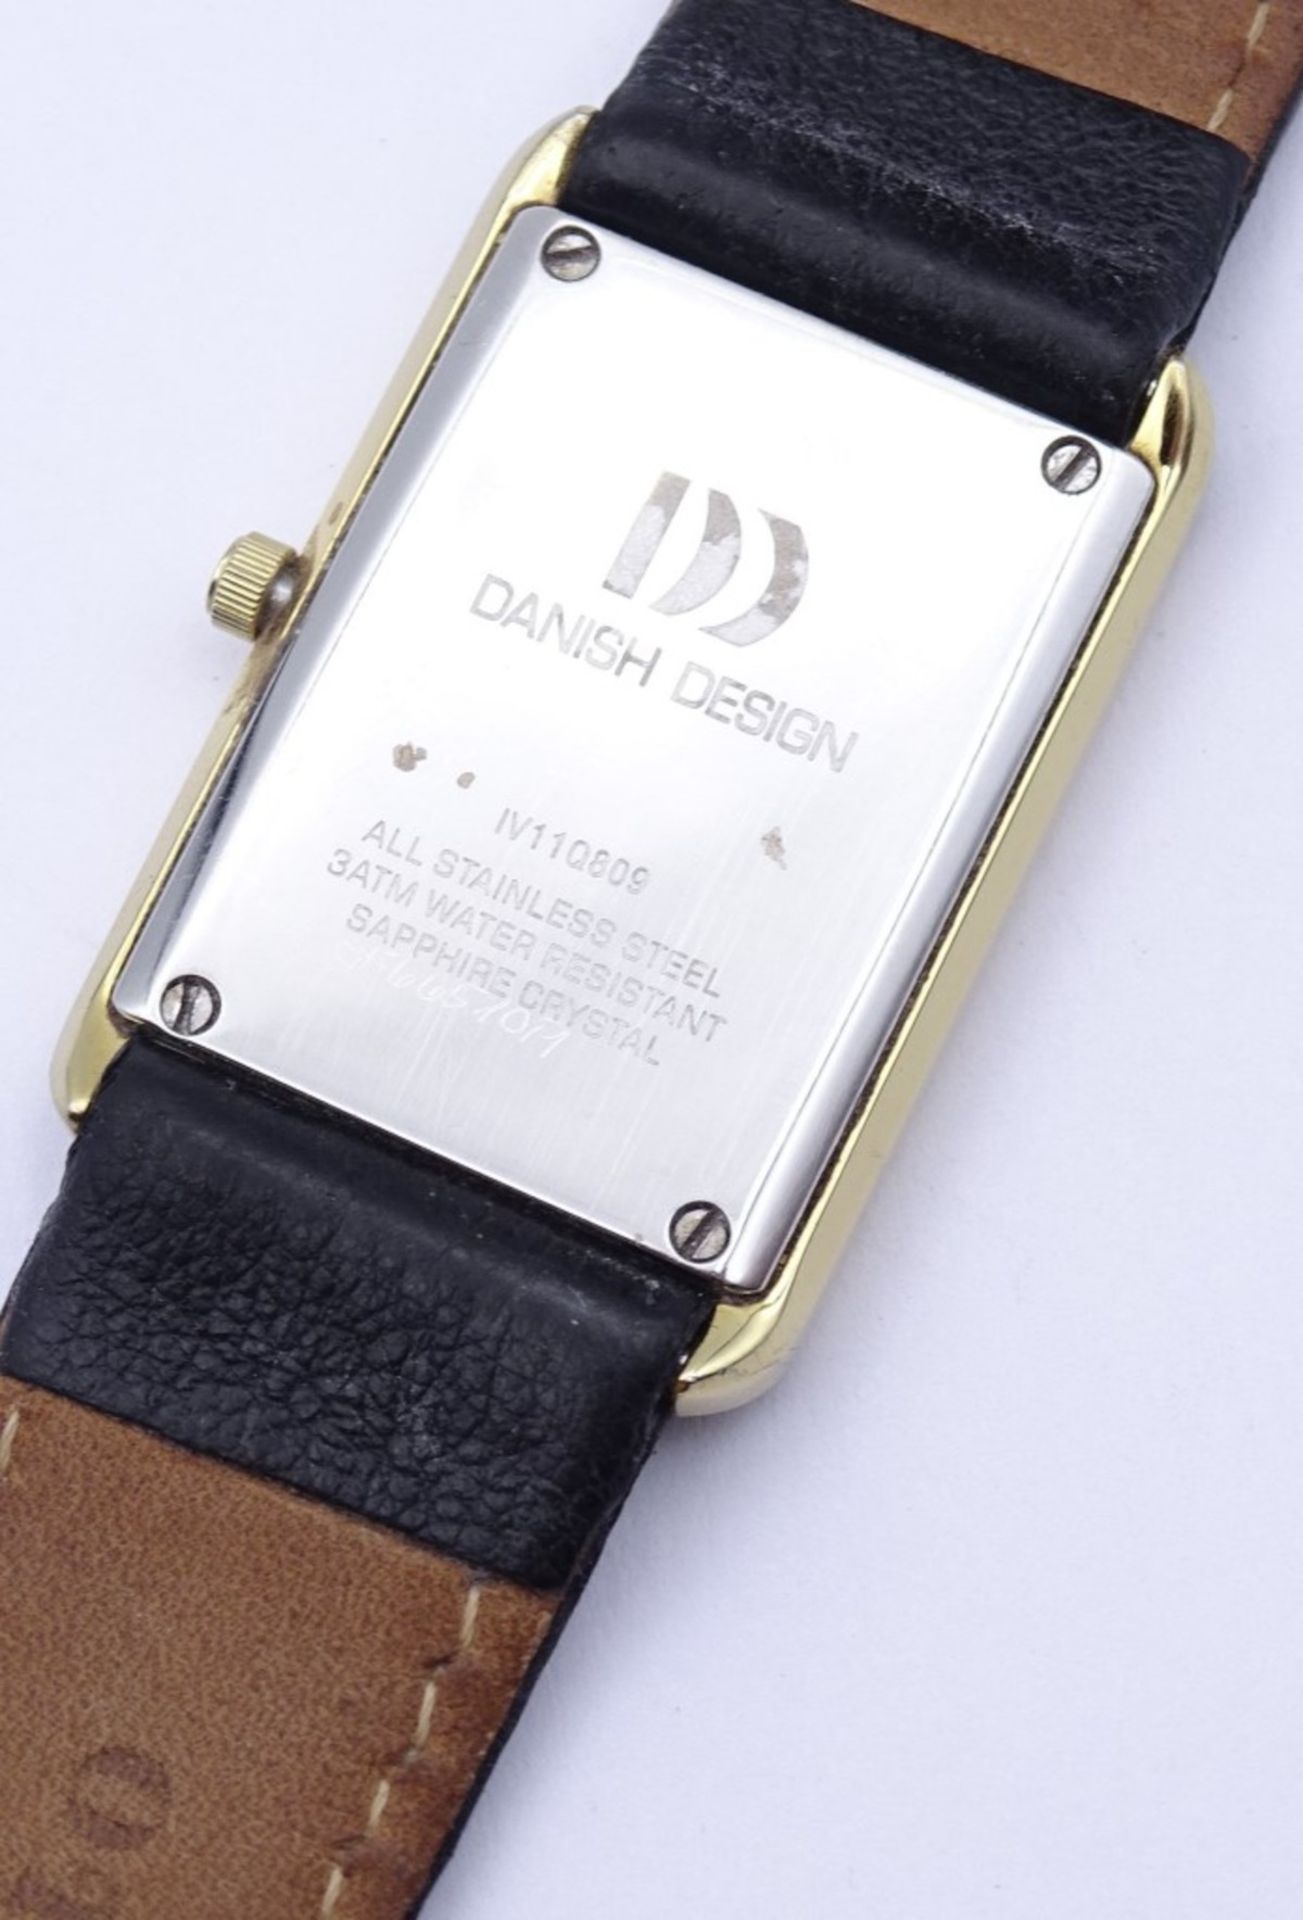 Armbanduhr "Danish Design",Quartzwerk,Gehäuse 23x27mm,Saphirglas,Batterie läuft - Bild 2 aus 4